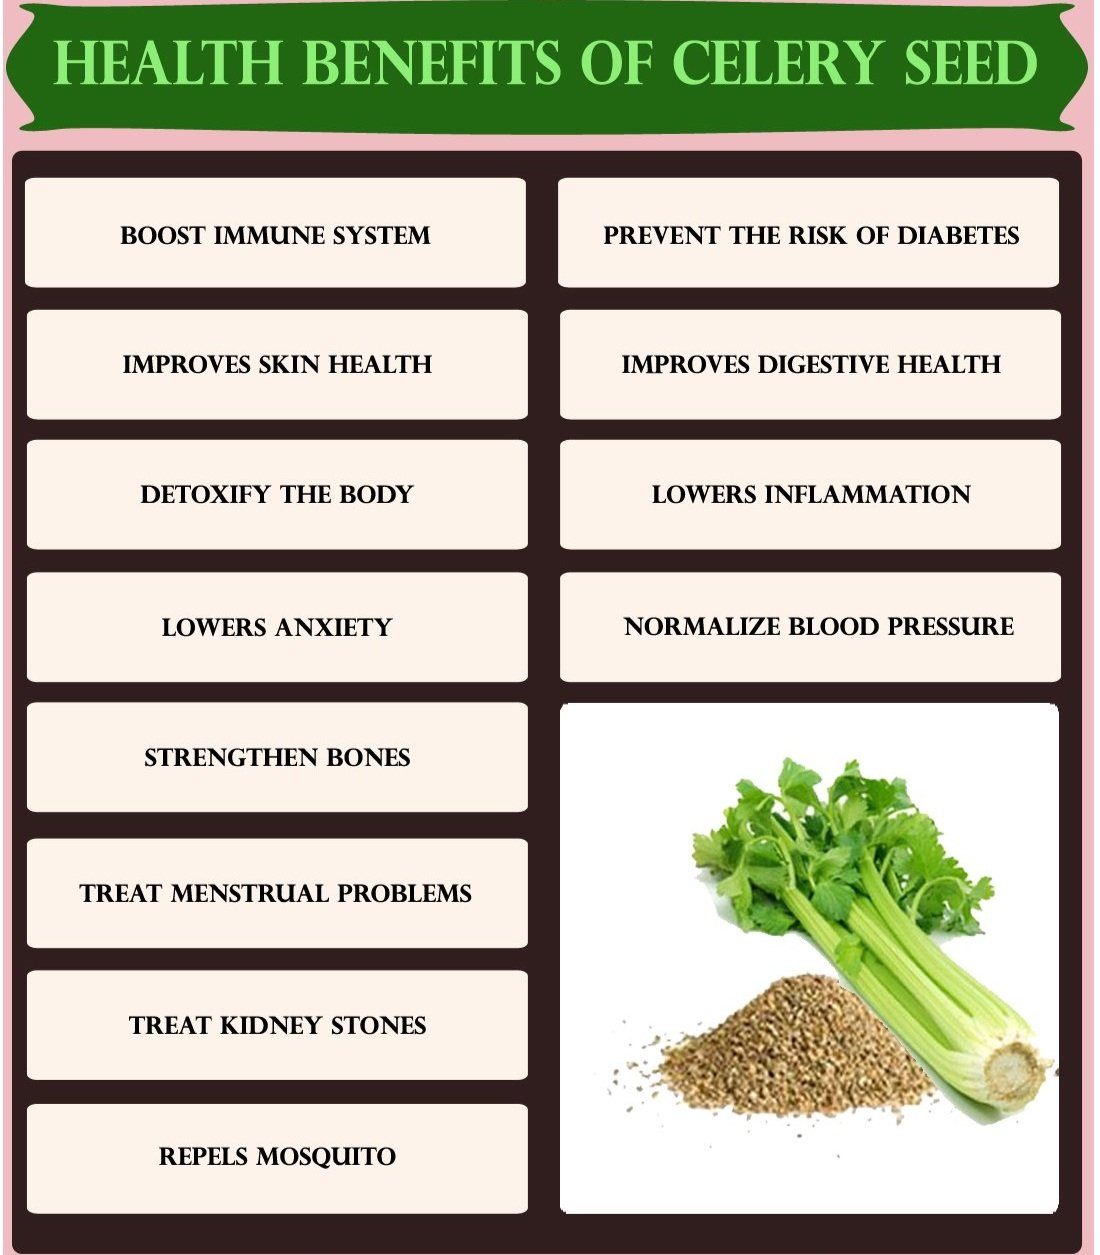 1717551913Health-Benefits-of-Celery-S.jpg